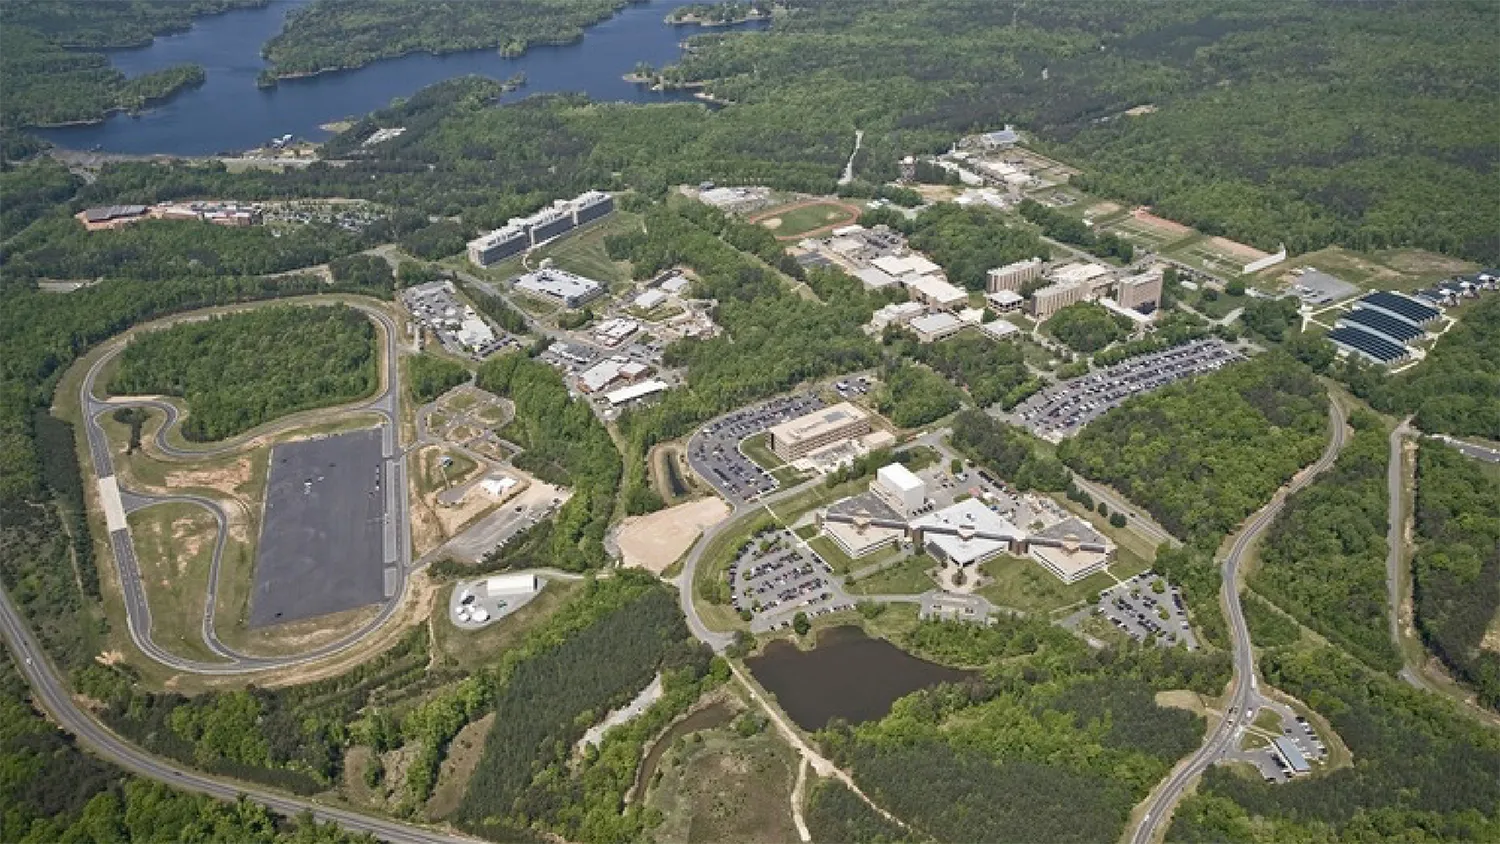 Aerial view of the FBI Campus at Quantico, Virginia.